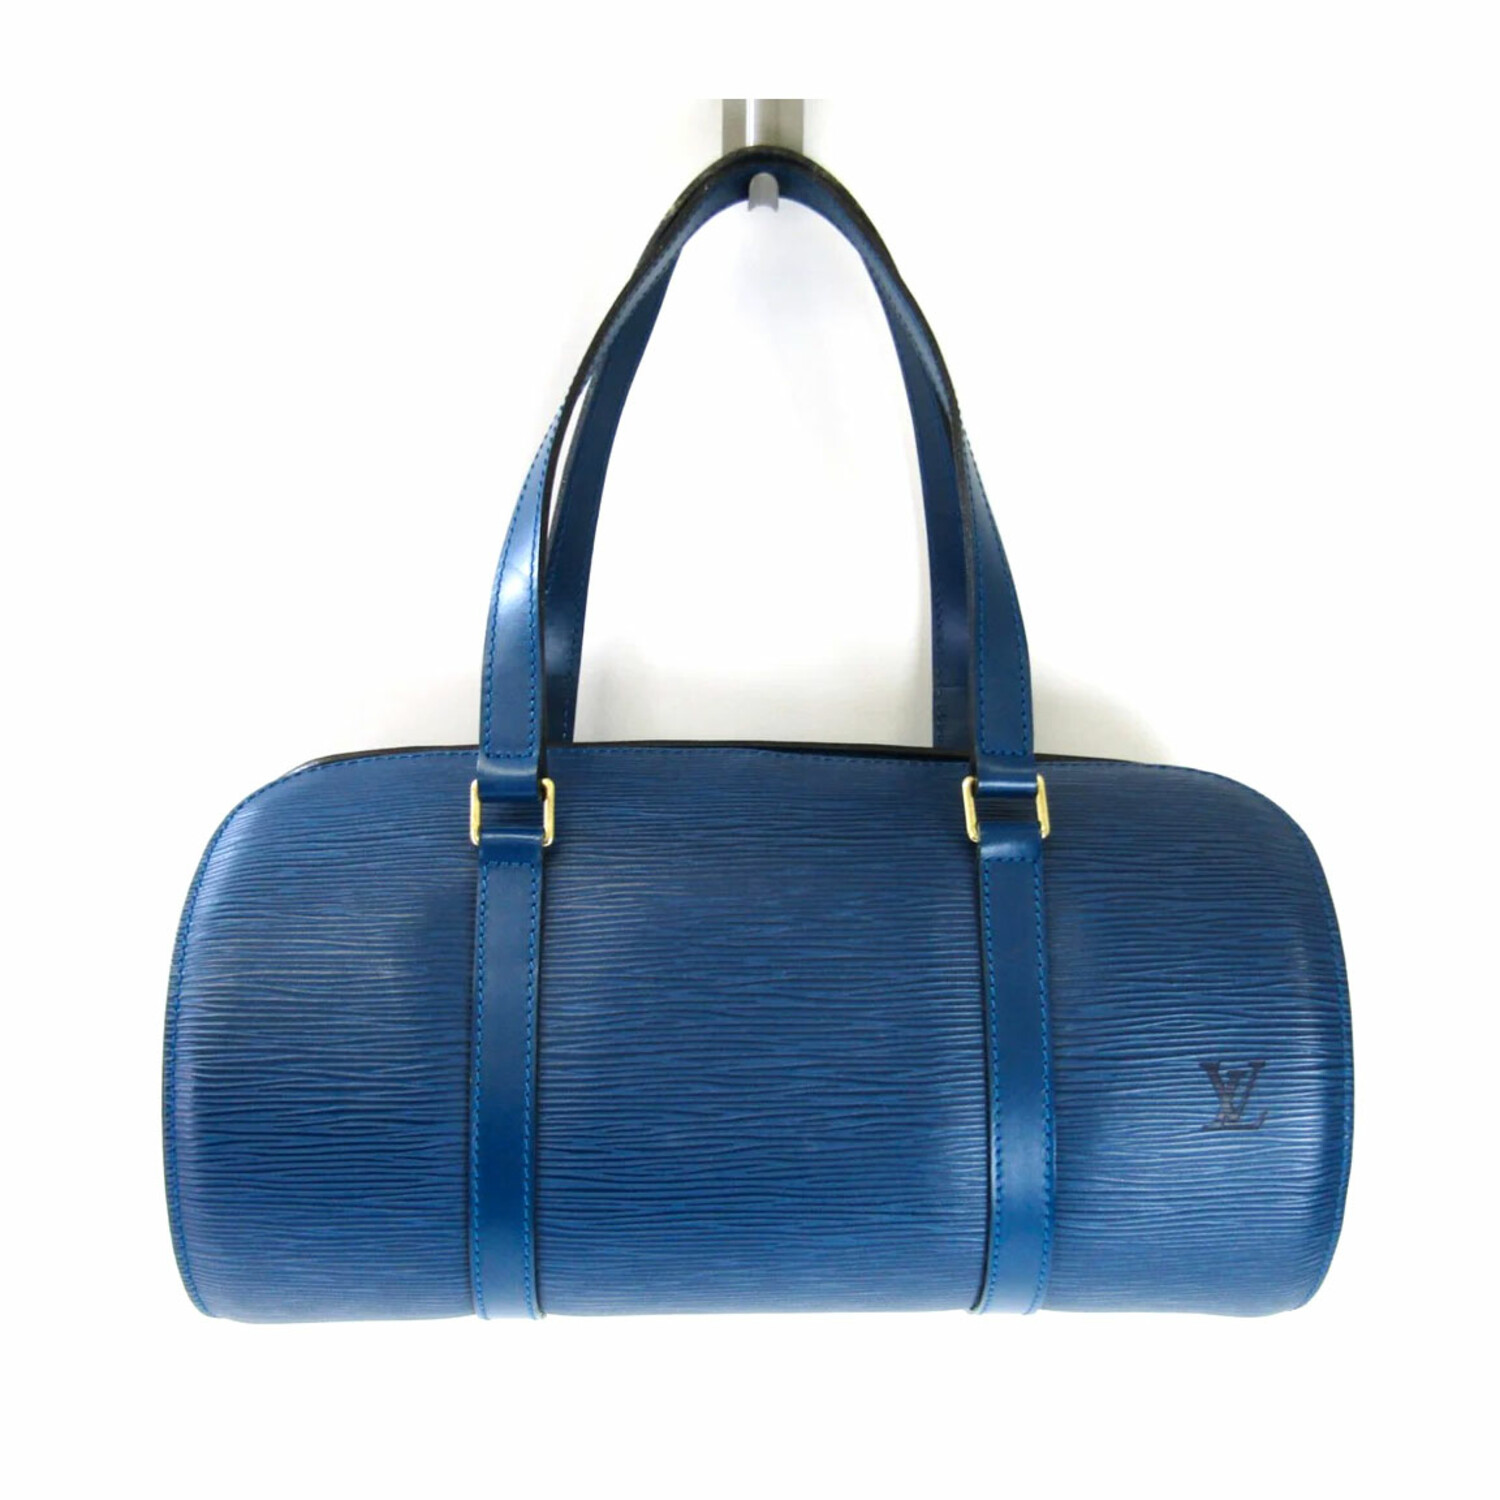 Louis Vuitton Baguette Handbags